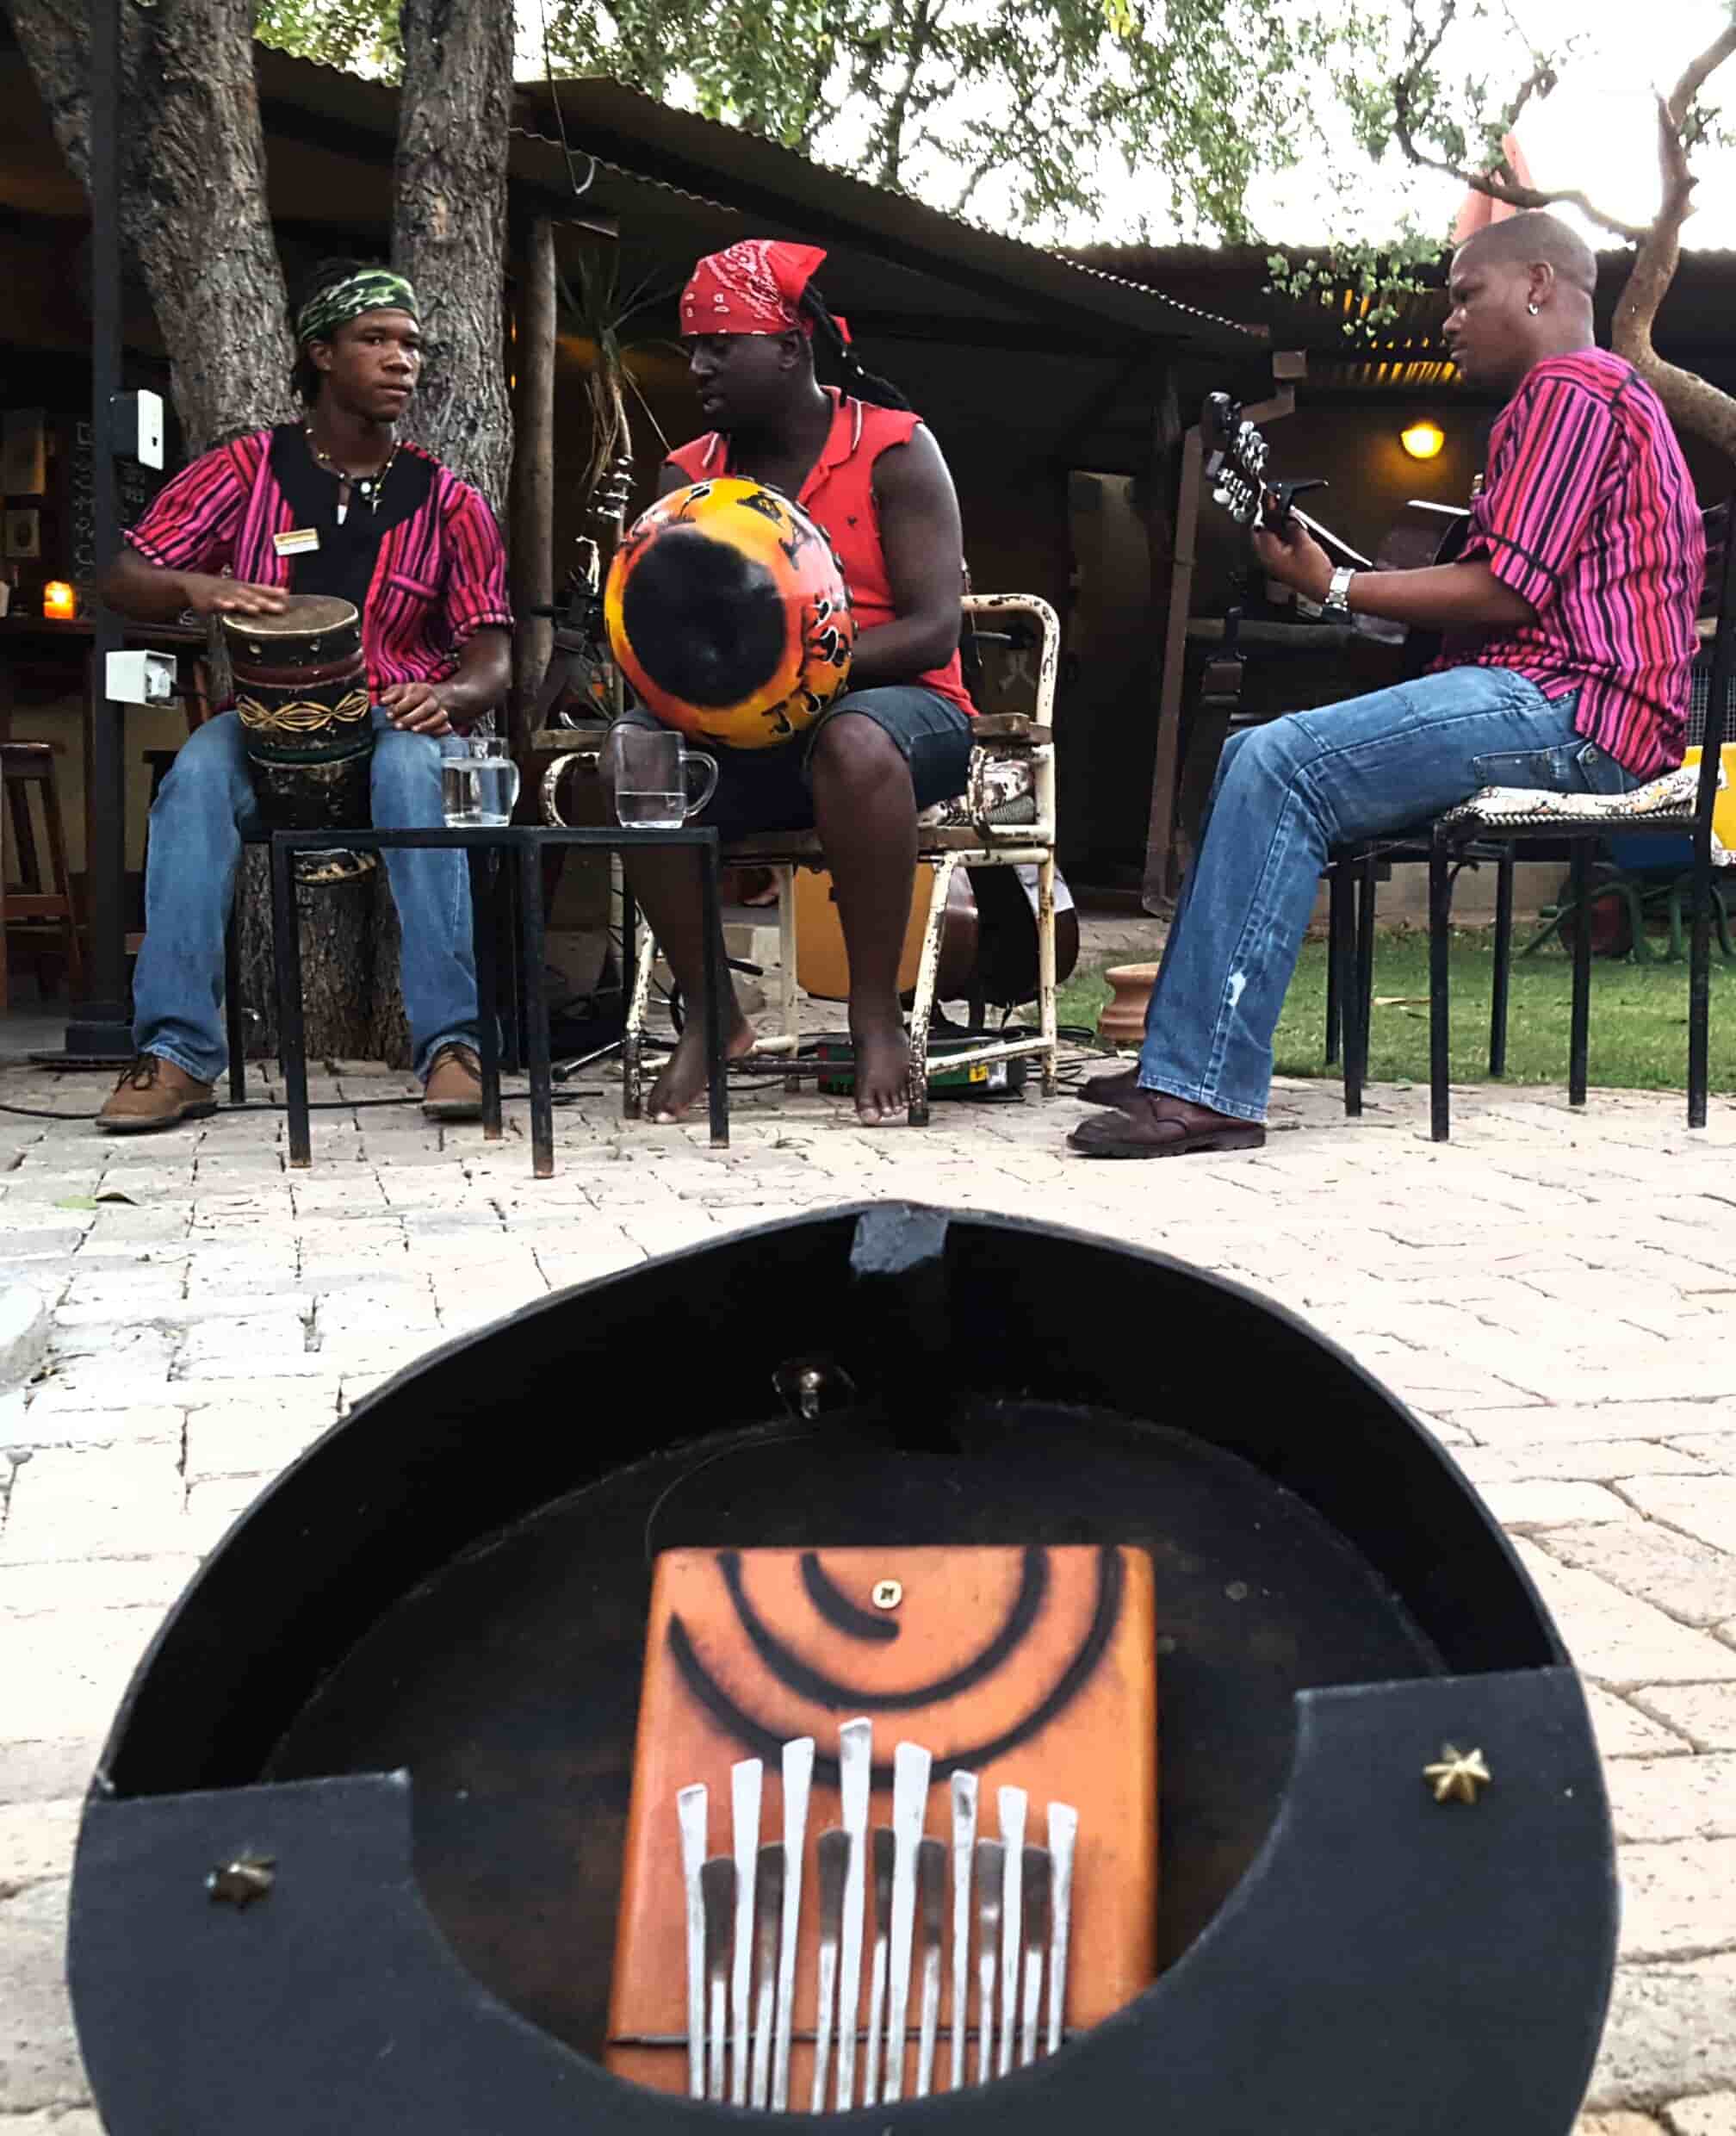 安比拉琴被认为是一种真正的非洲乐器